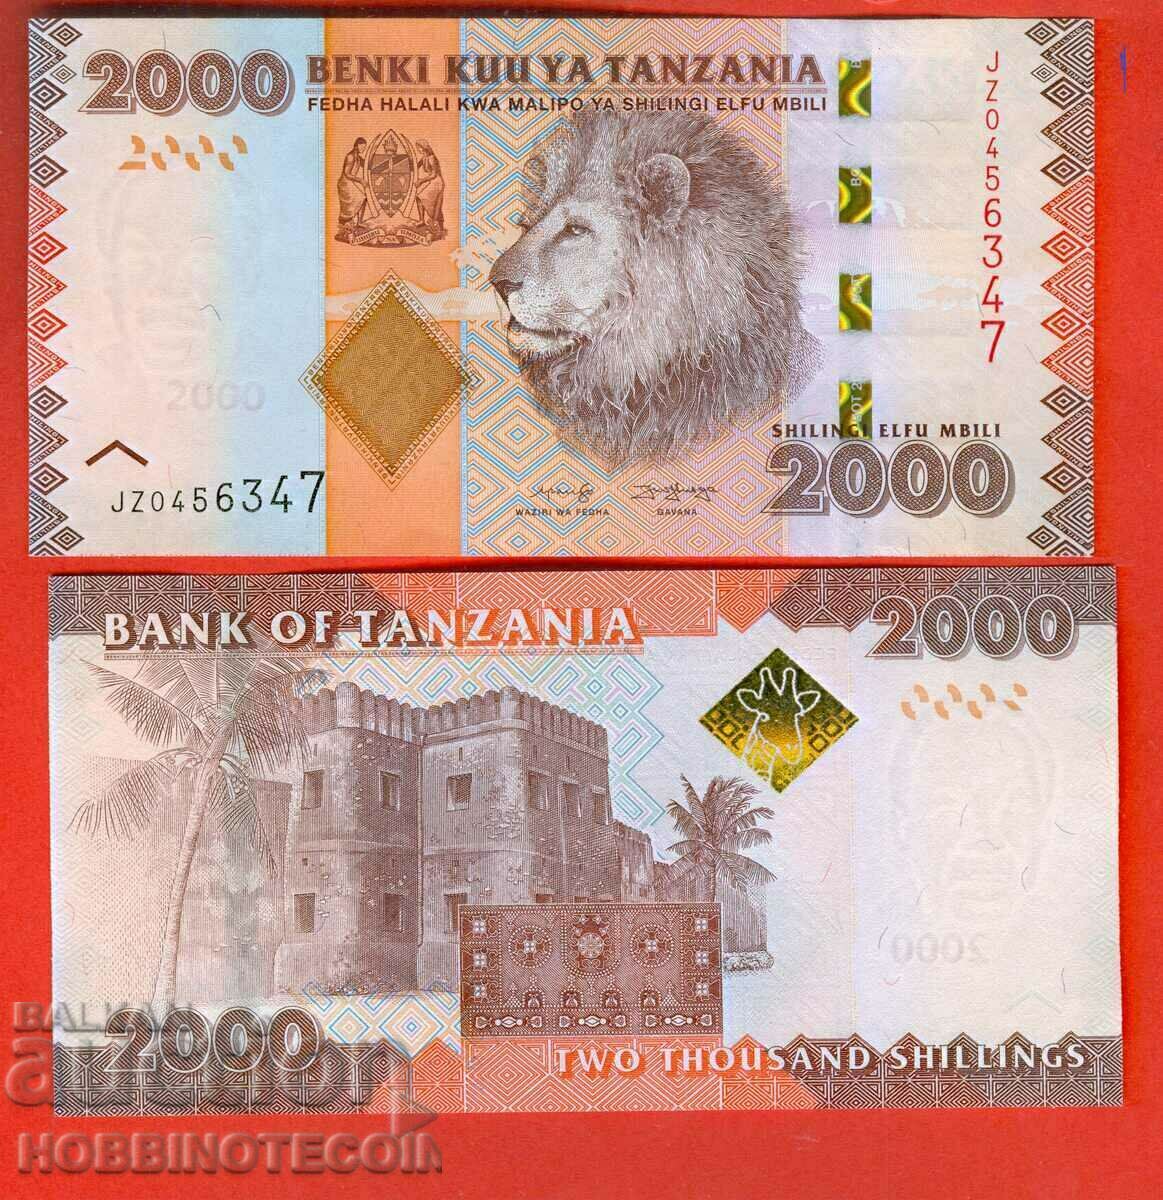 TANZANIA TANZANIA 2000 Έκδοση σελίνι - τεύχος 2020 NEW UNC